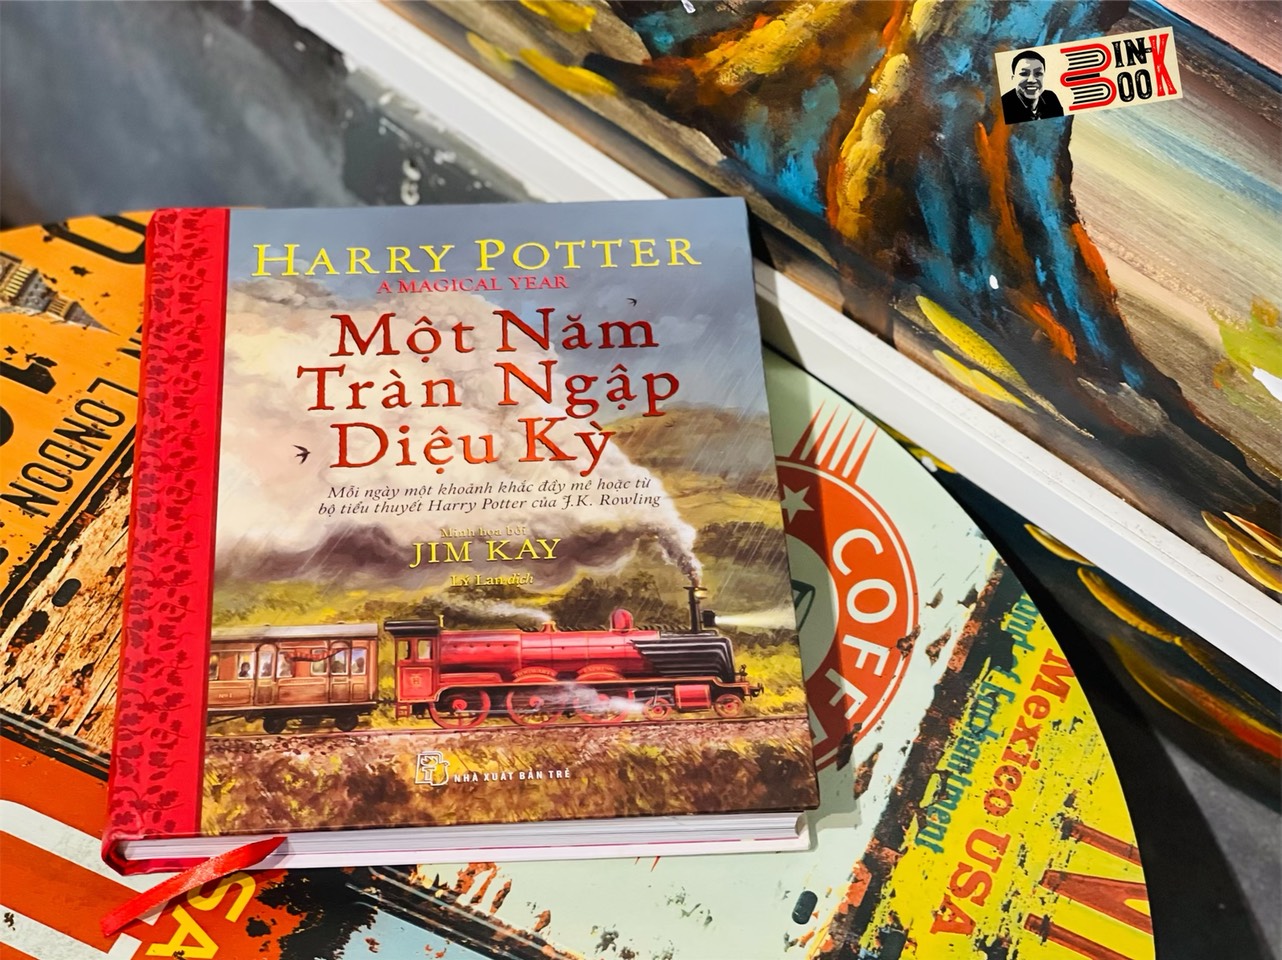 [Bìa cứng, minh họa in màu] HARRY POTTER - MỘT NĂM TRÀN NGẬP DIỆU KỲ - J.K.Rowling - Jim Kay minh họa – Nxb Trẻ